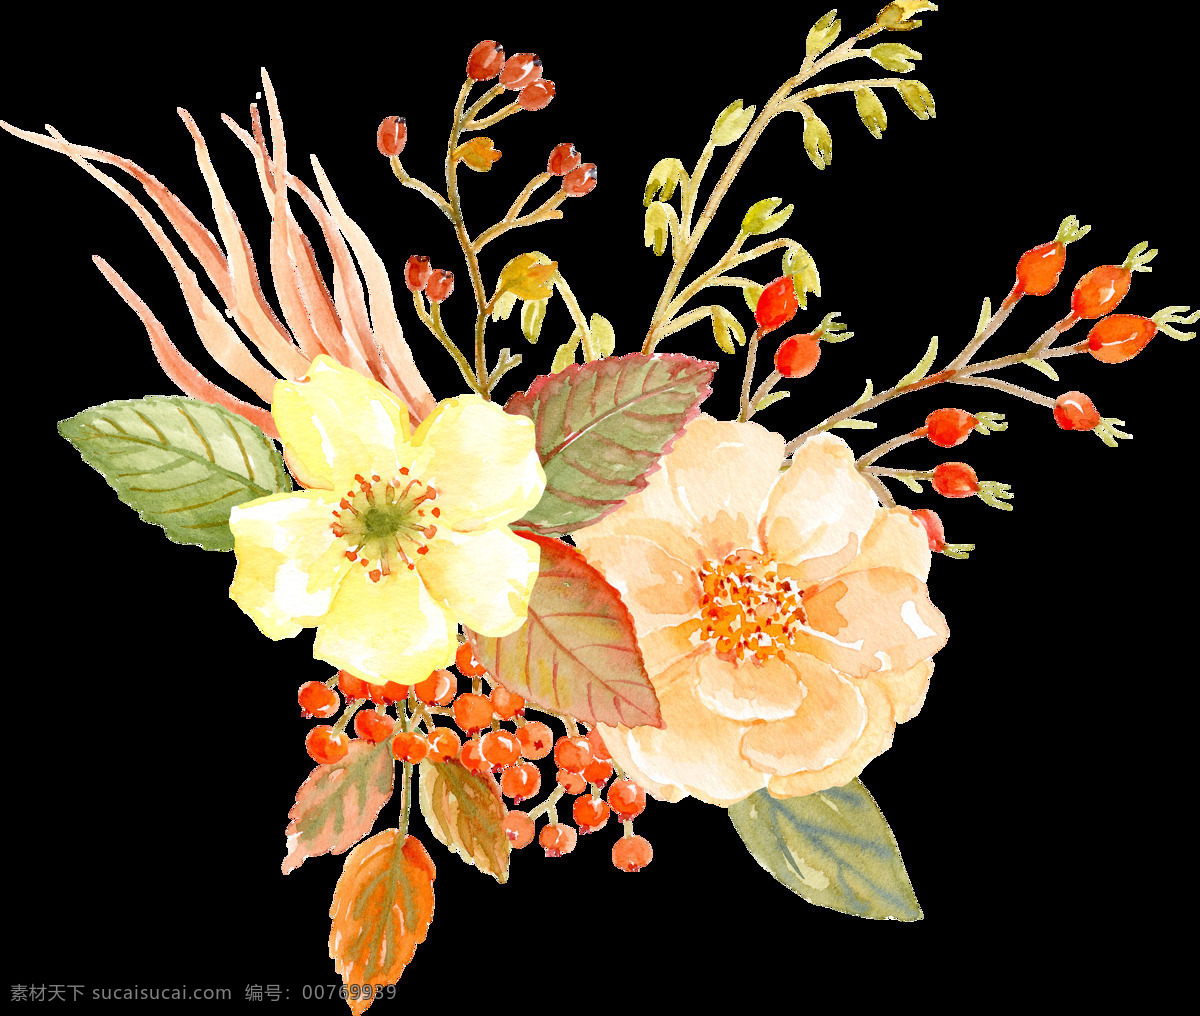 水彩 花朵 装饰 花圈花环 鲜艳花朵 植物花朵 花朵装饰 花卉图案 水彩花朵 婚礼装饰 文化艺术 绘画书法